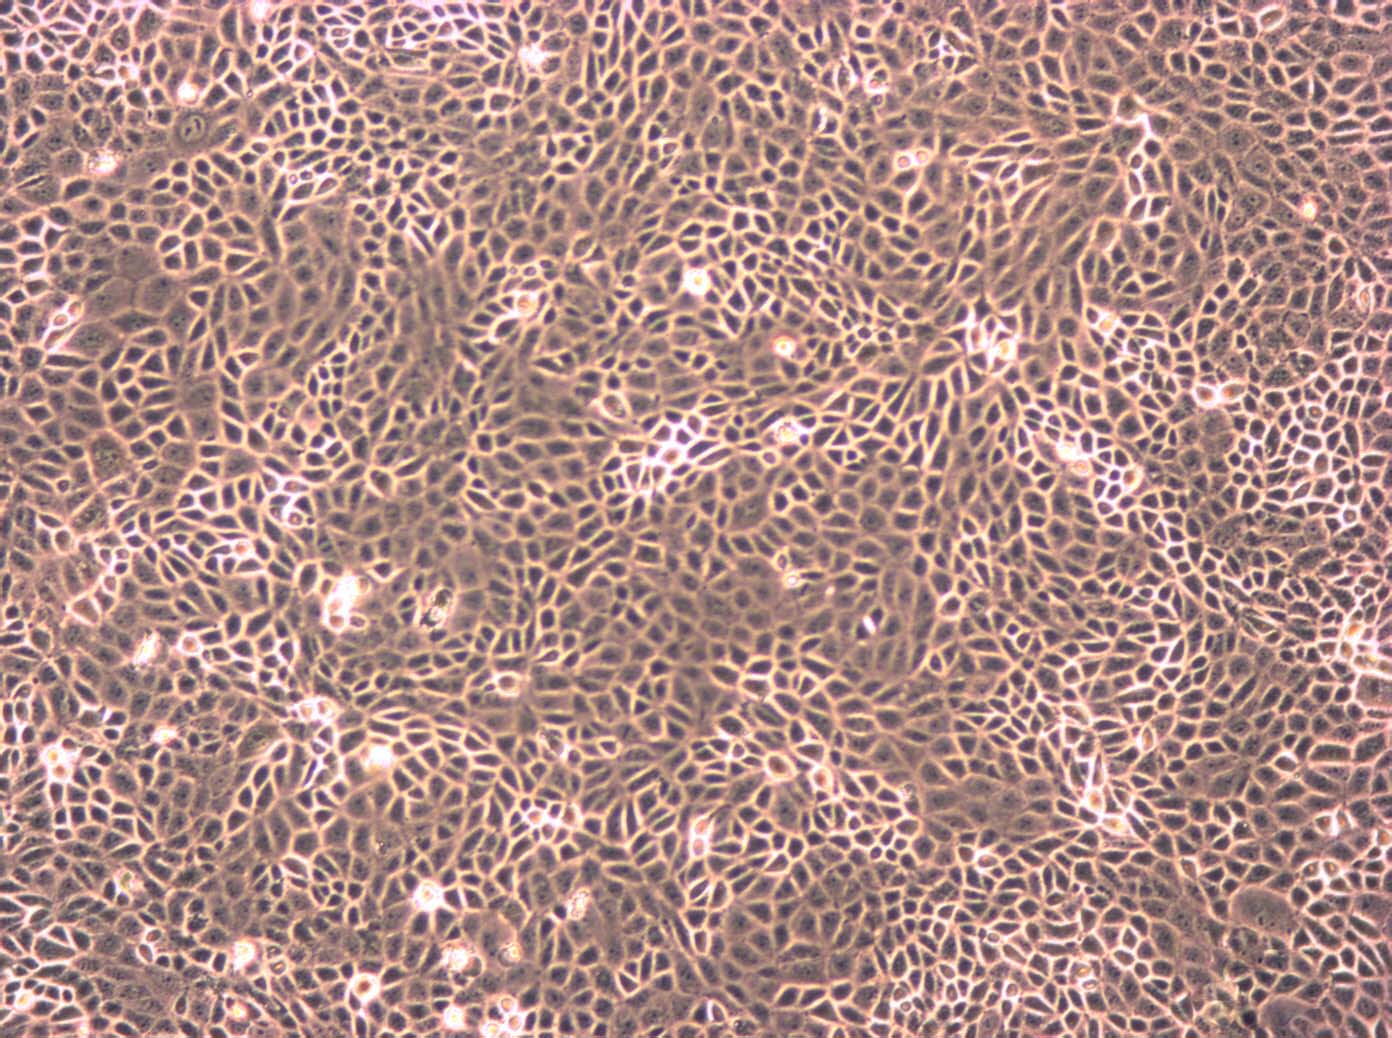 RWPE-1:人正常前列腺上皮复苏细胞(提供STR鉴定图谱)